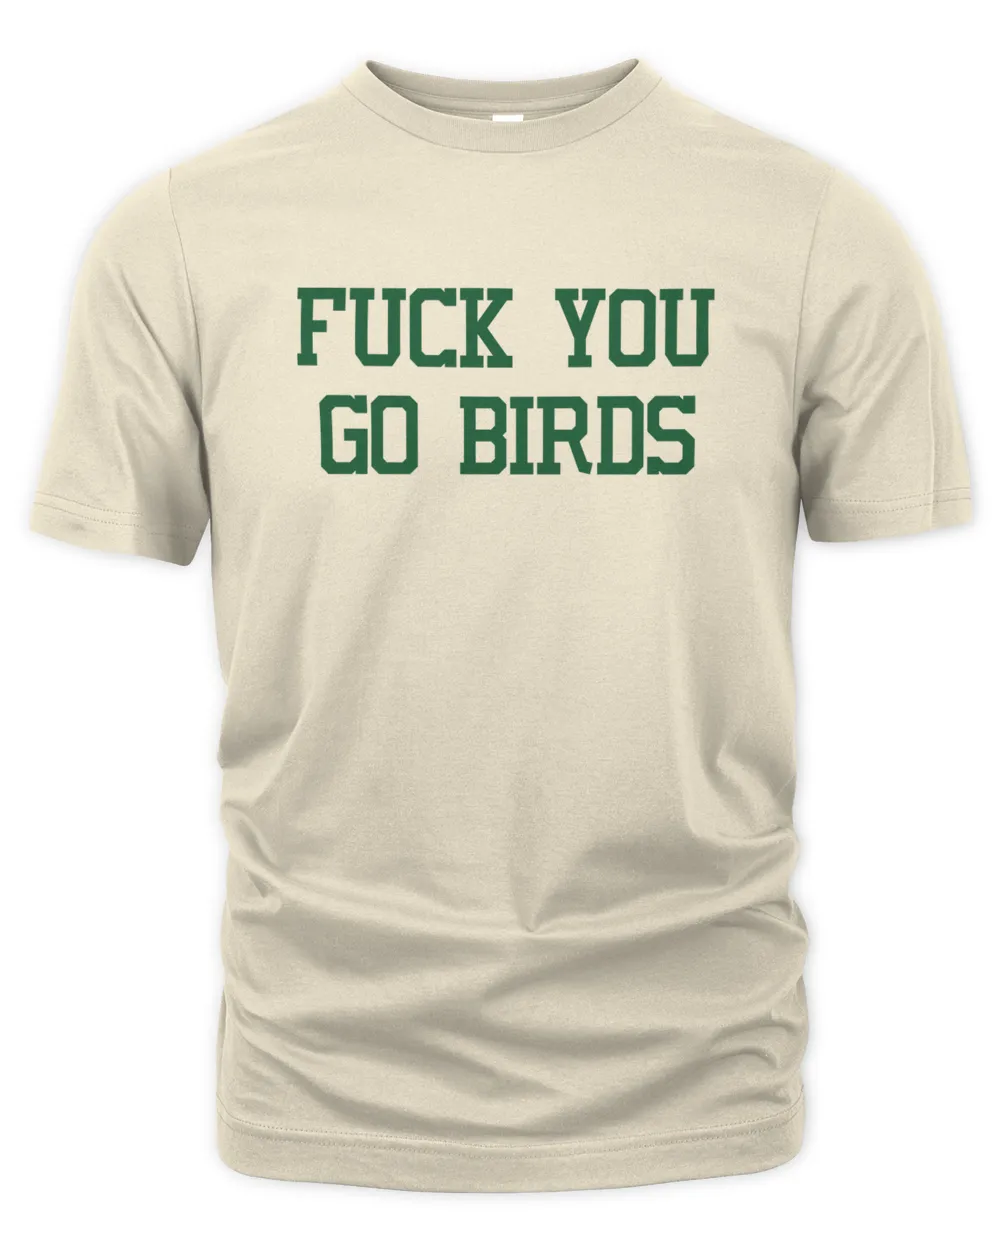 Fuck You Go Birds Shirt